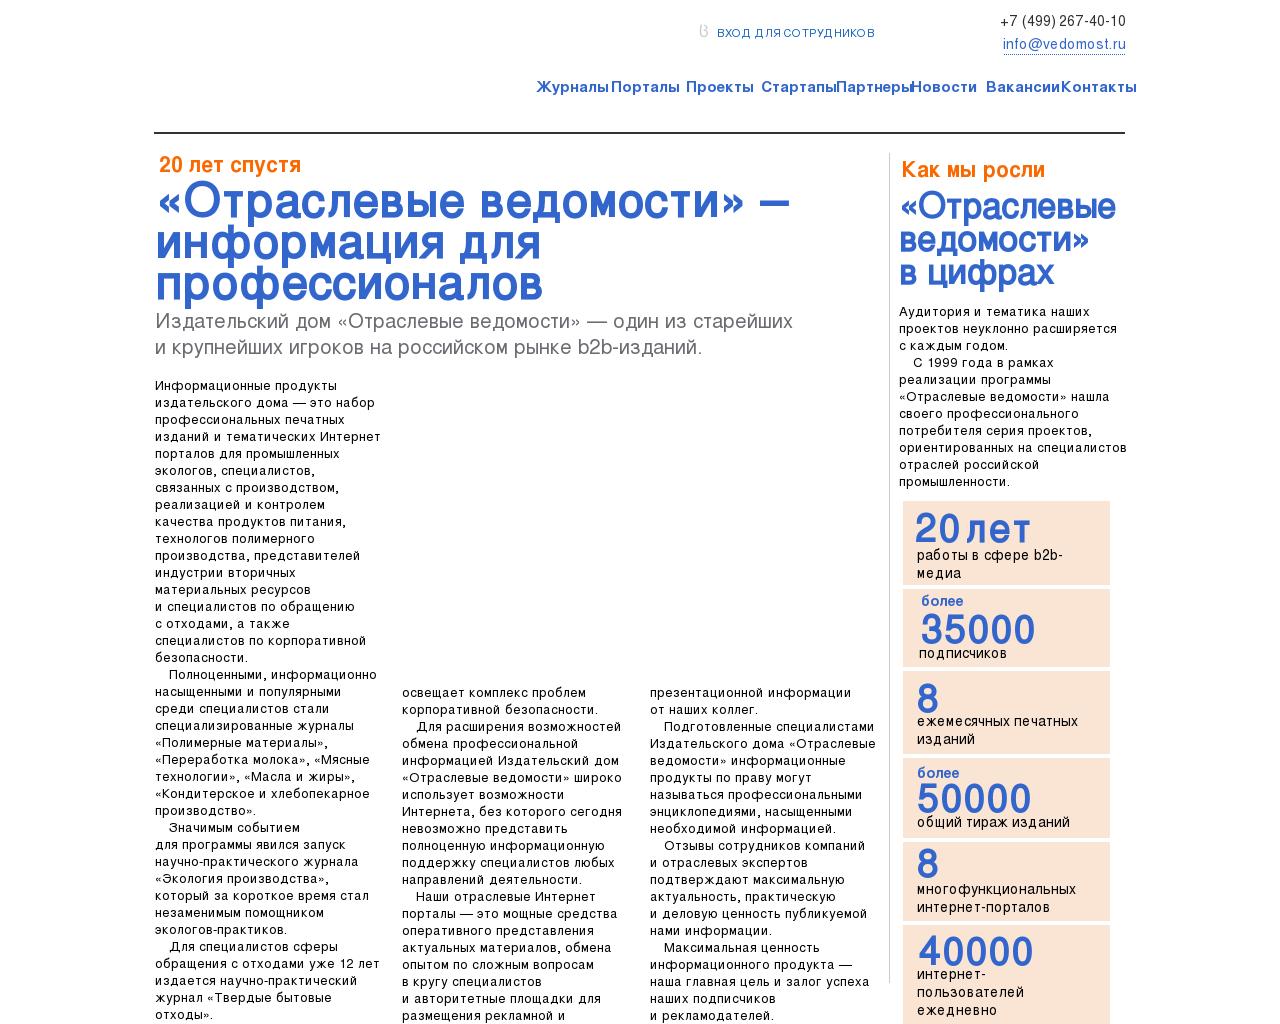 Изображение сайта vedomost.ru в разрешении 1280x1024